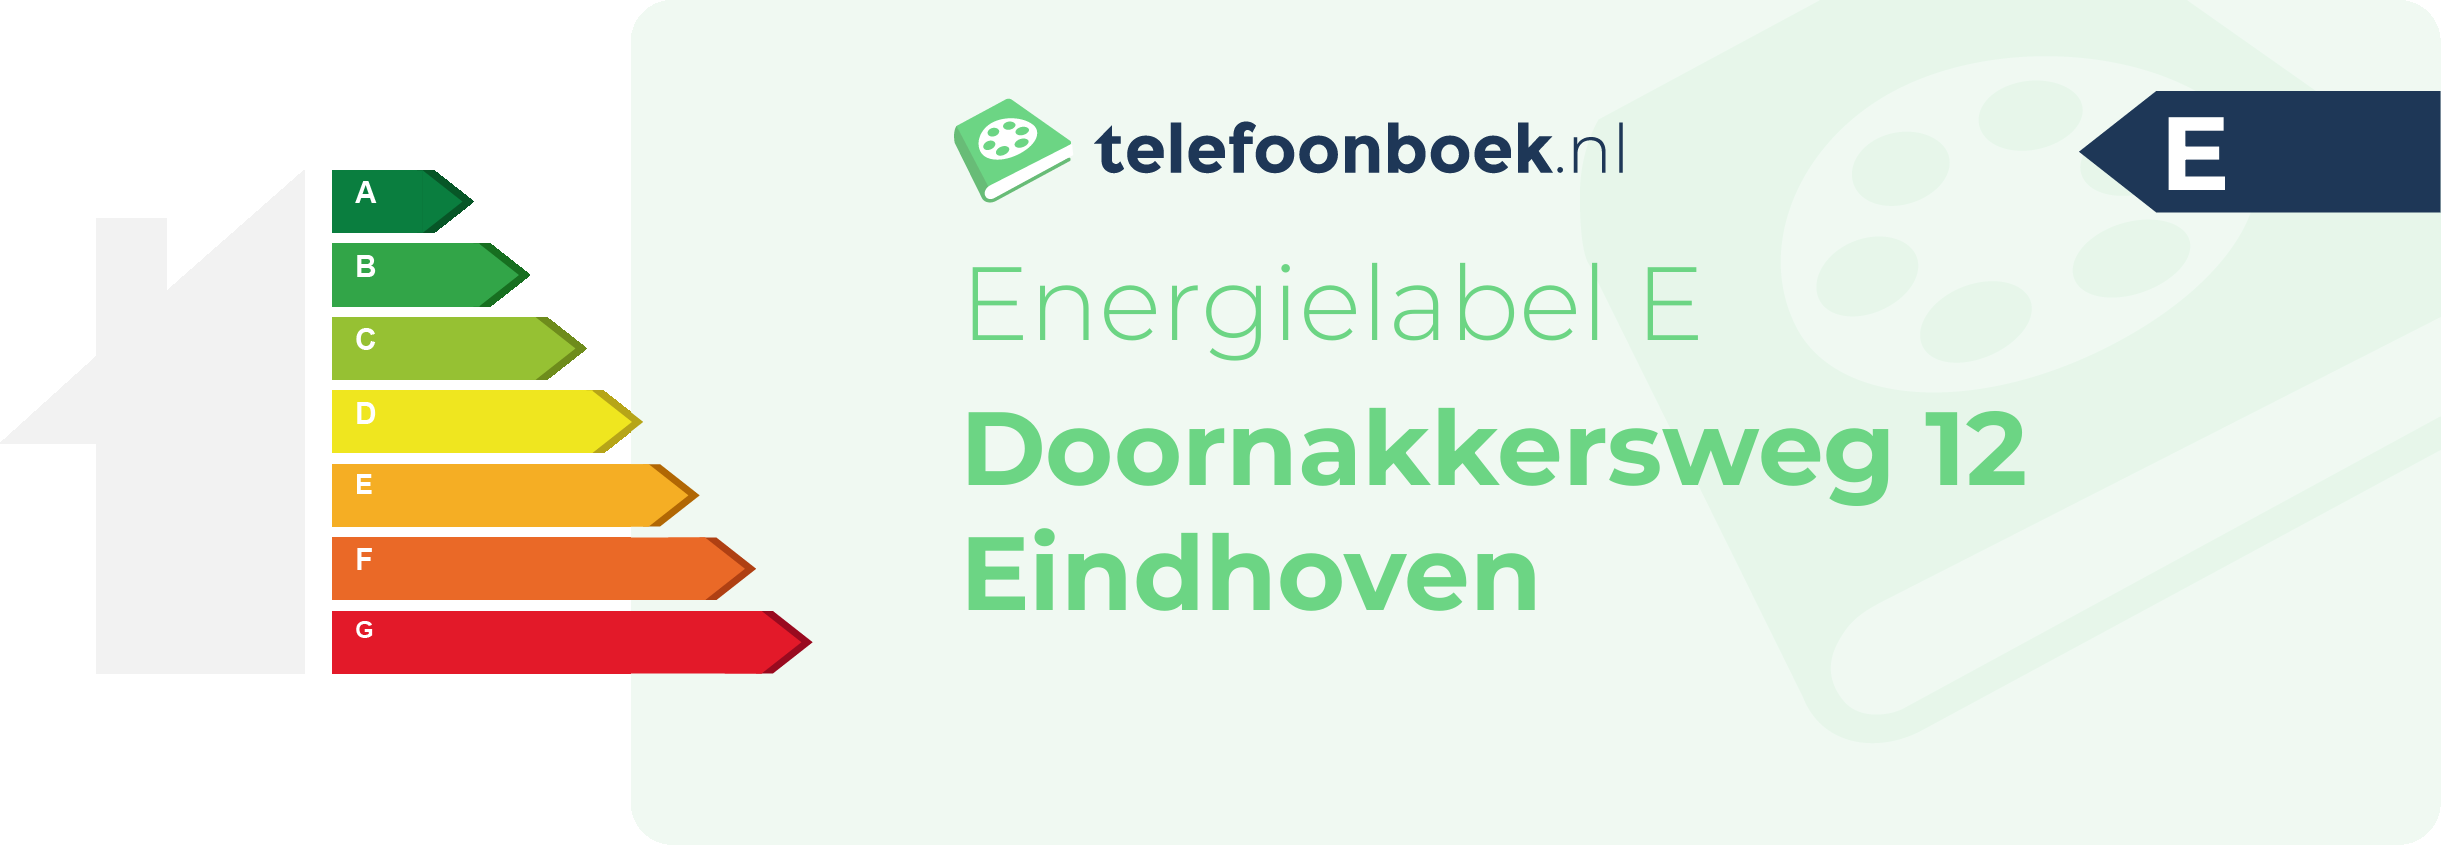 Energielabel Doornakkersweg 12 Eindhoven